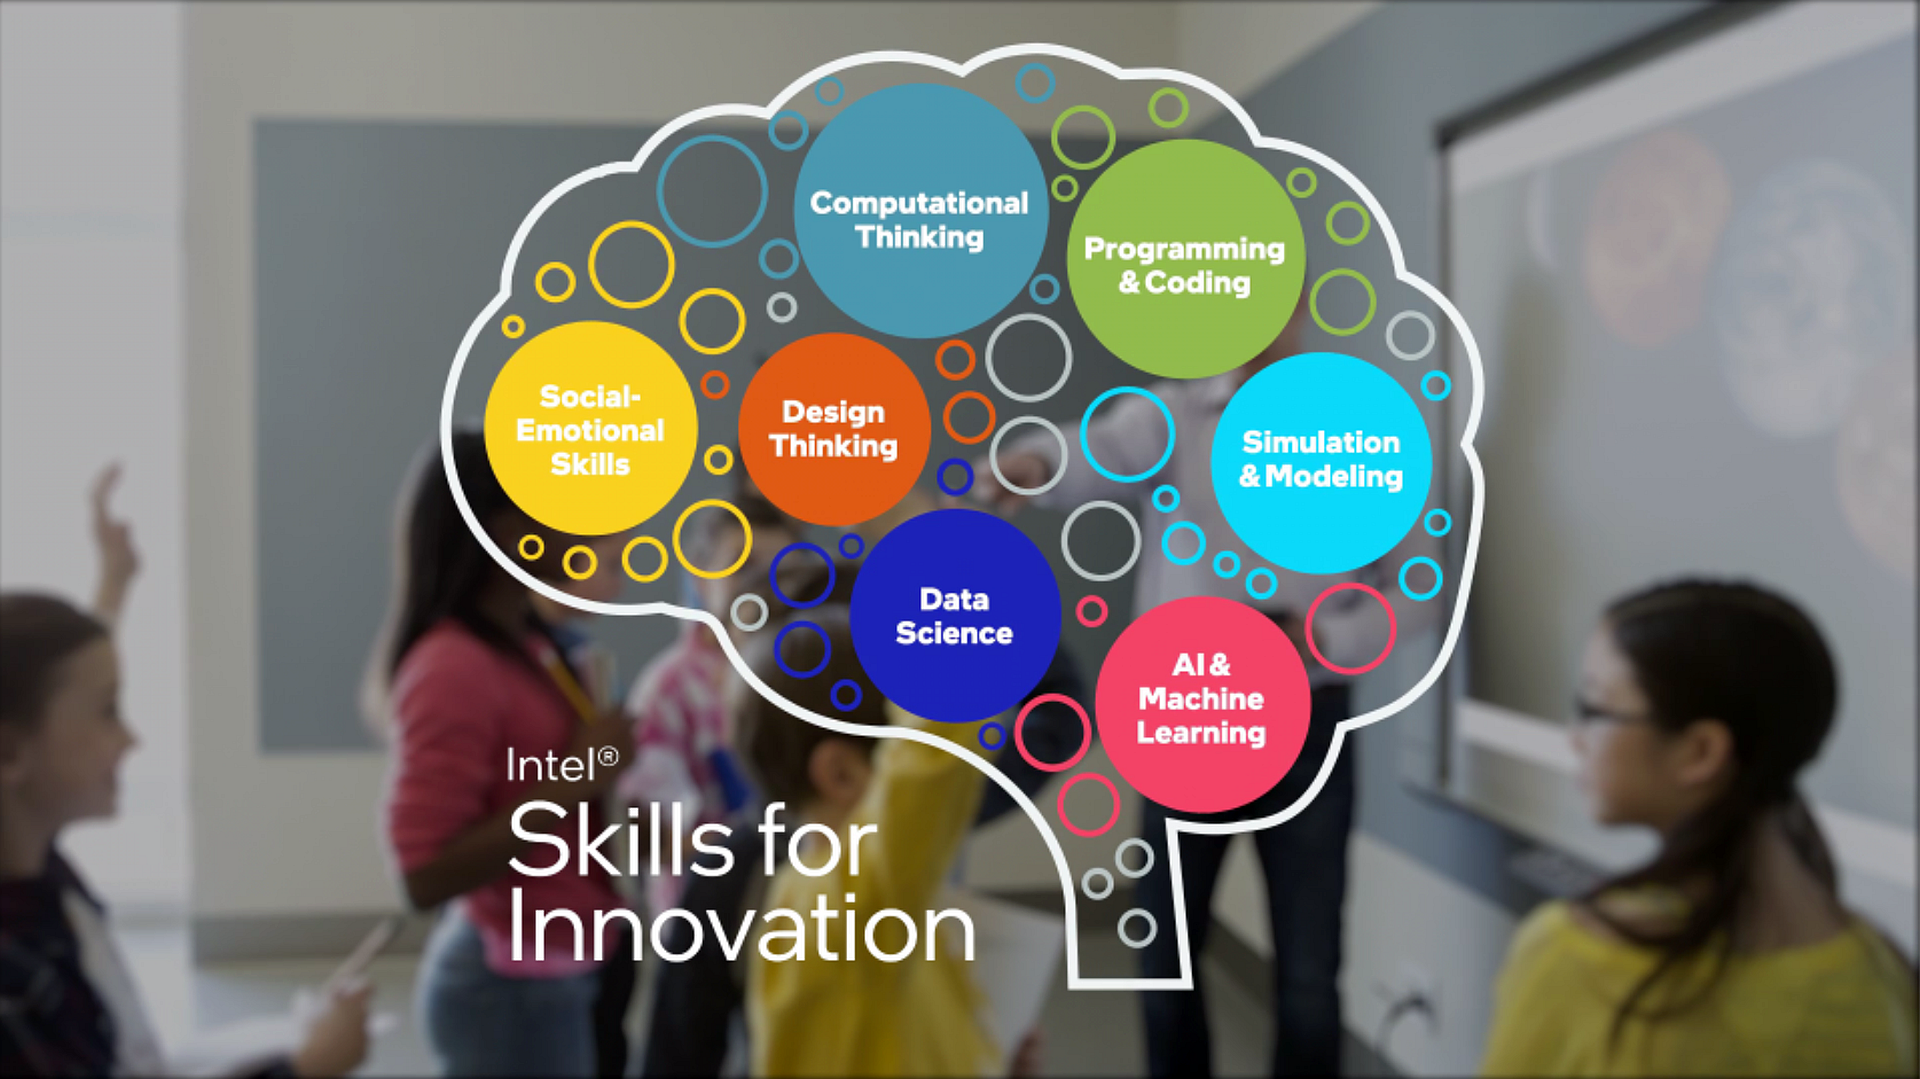 Intel skills for innovation